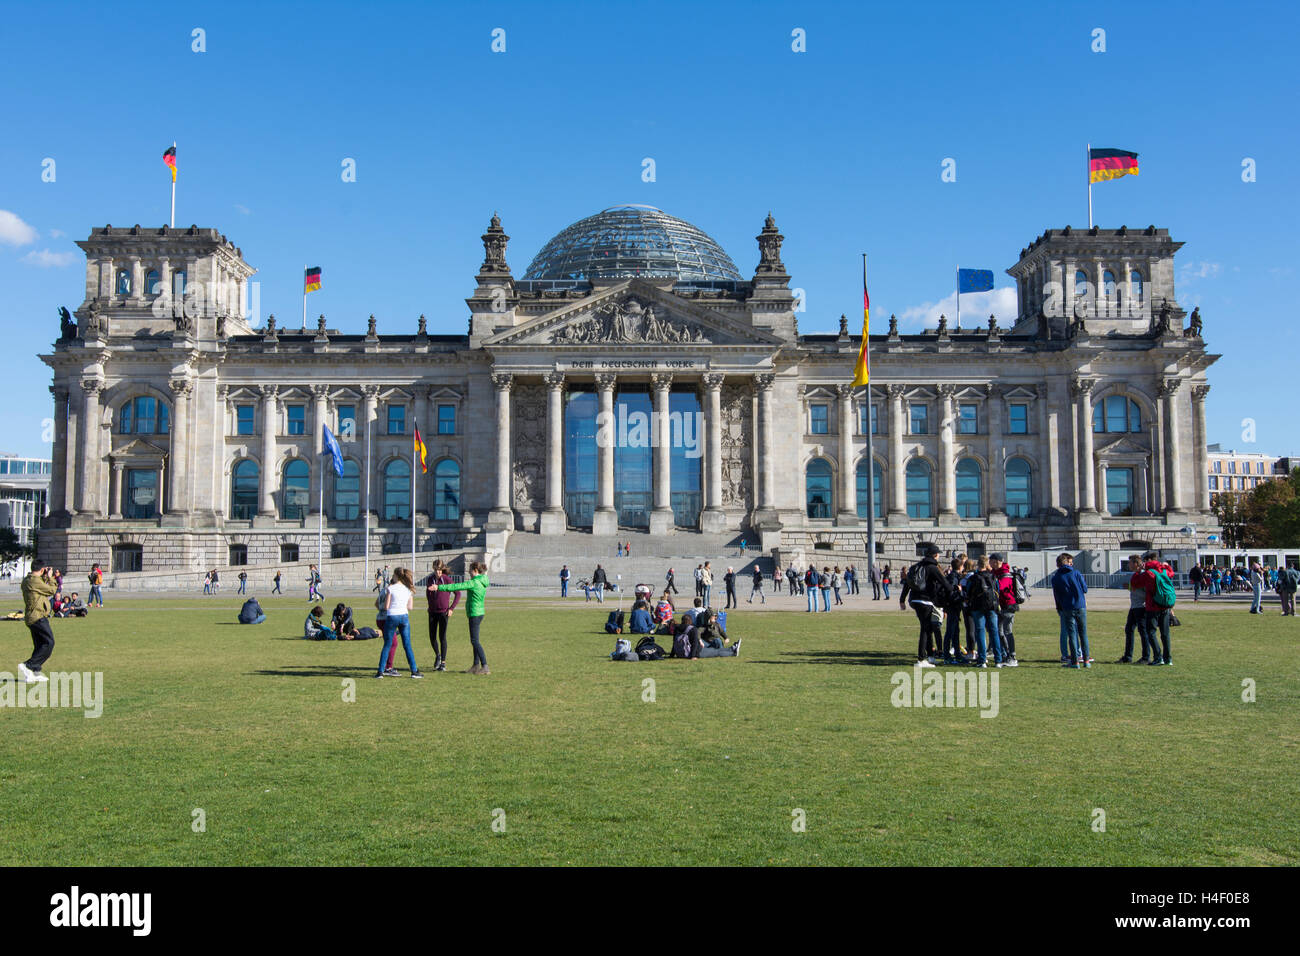 L'edificio del Reichstag, sede del parlamento tedesco a Berlino Foto Stock